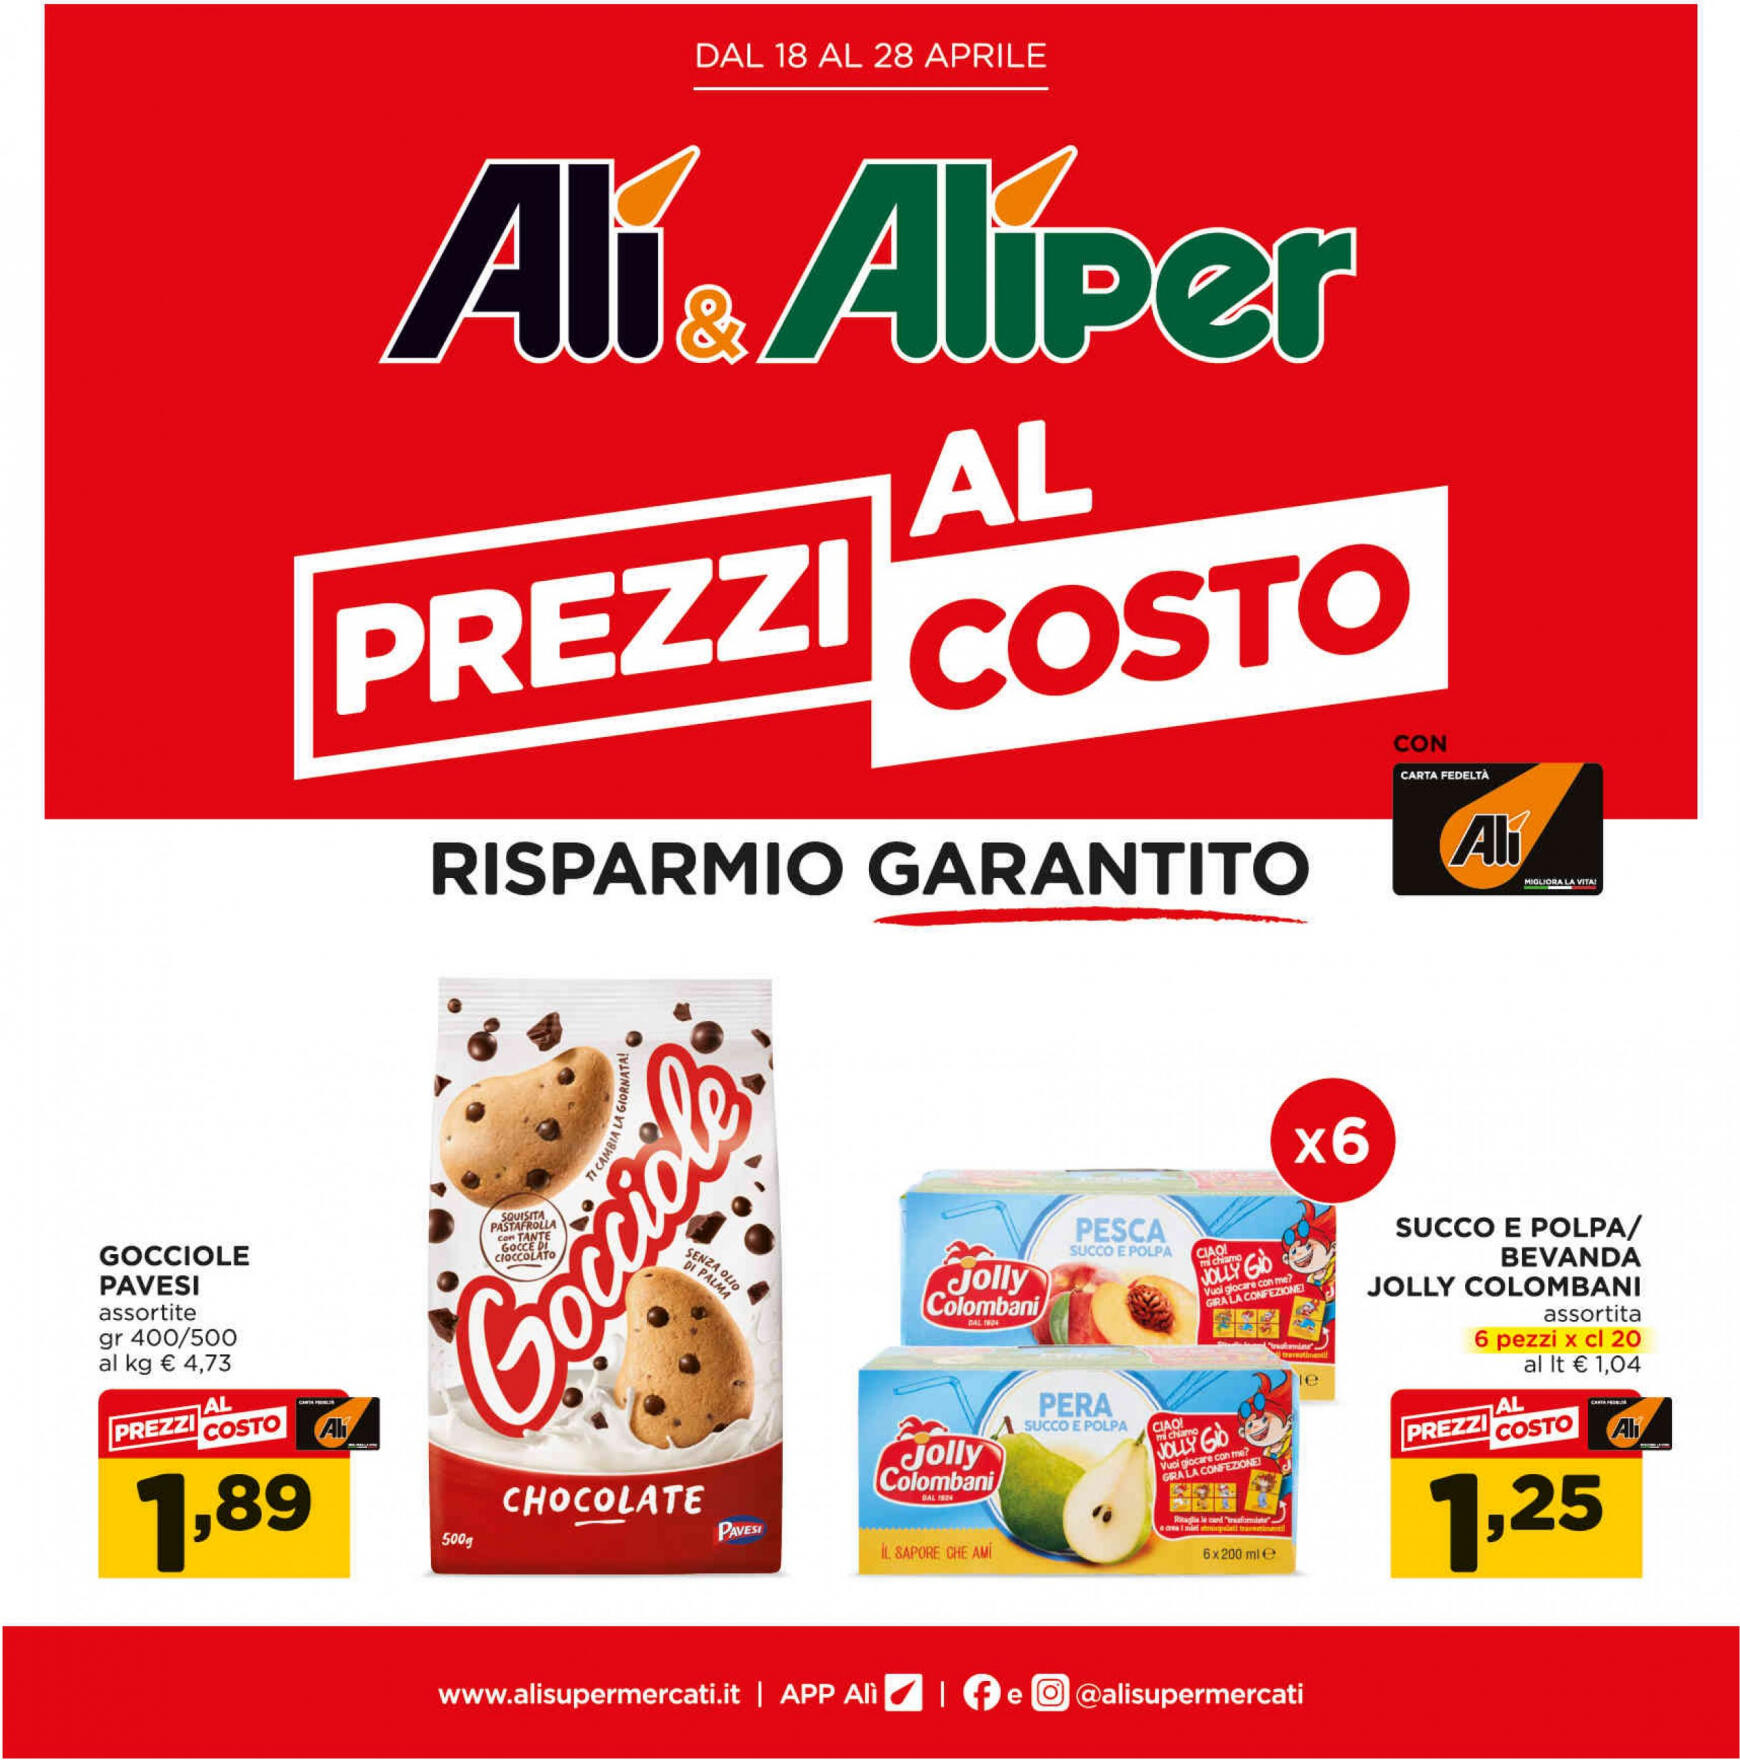 ali-aliper - Nuovo volantino Ali - Aliper - Prezzi al costo 18.04. - 28.04.